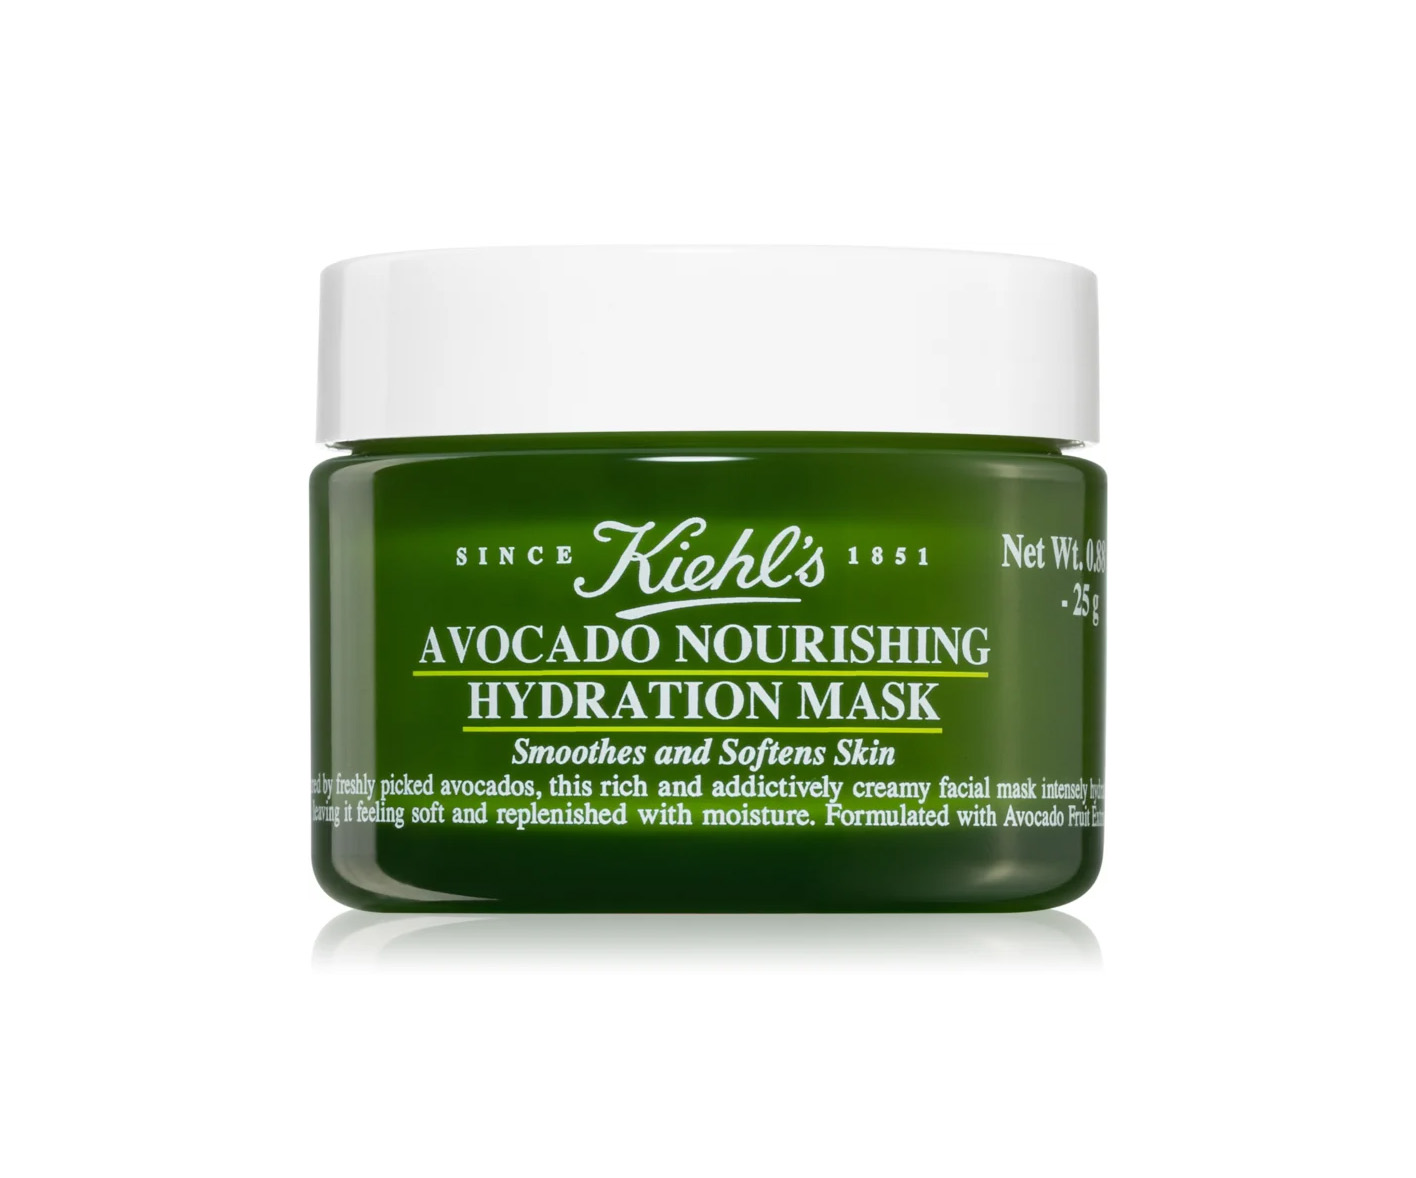 Kiehl's Avocado Nourishing Hydration Mask, avokadomask